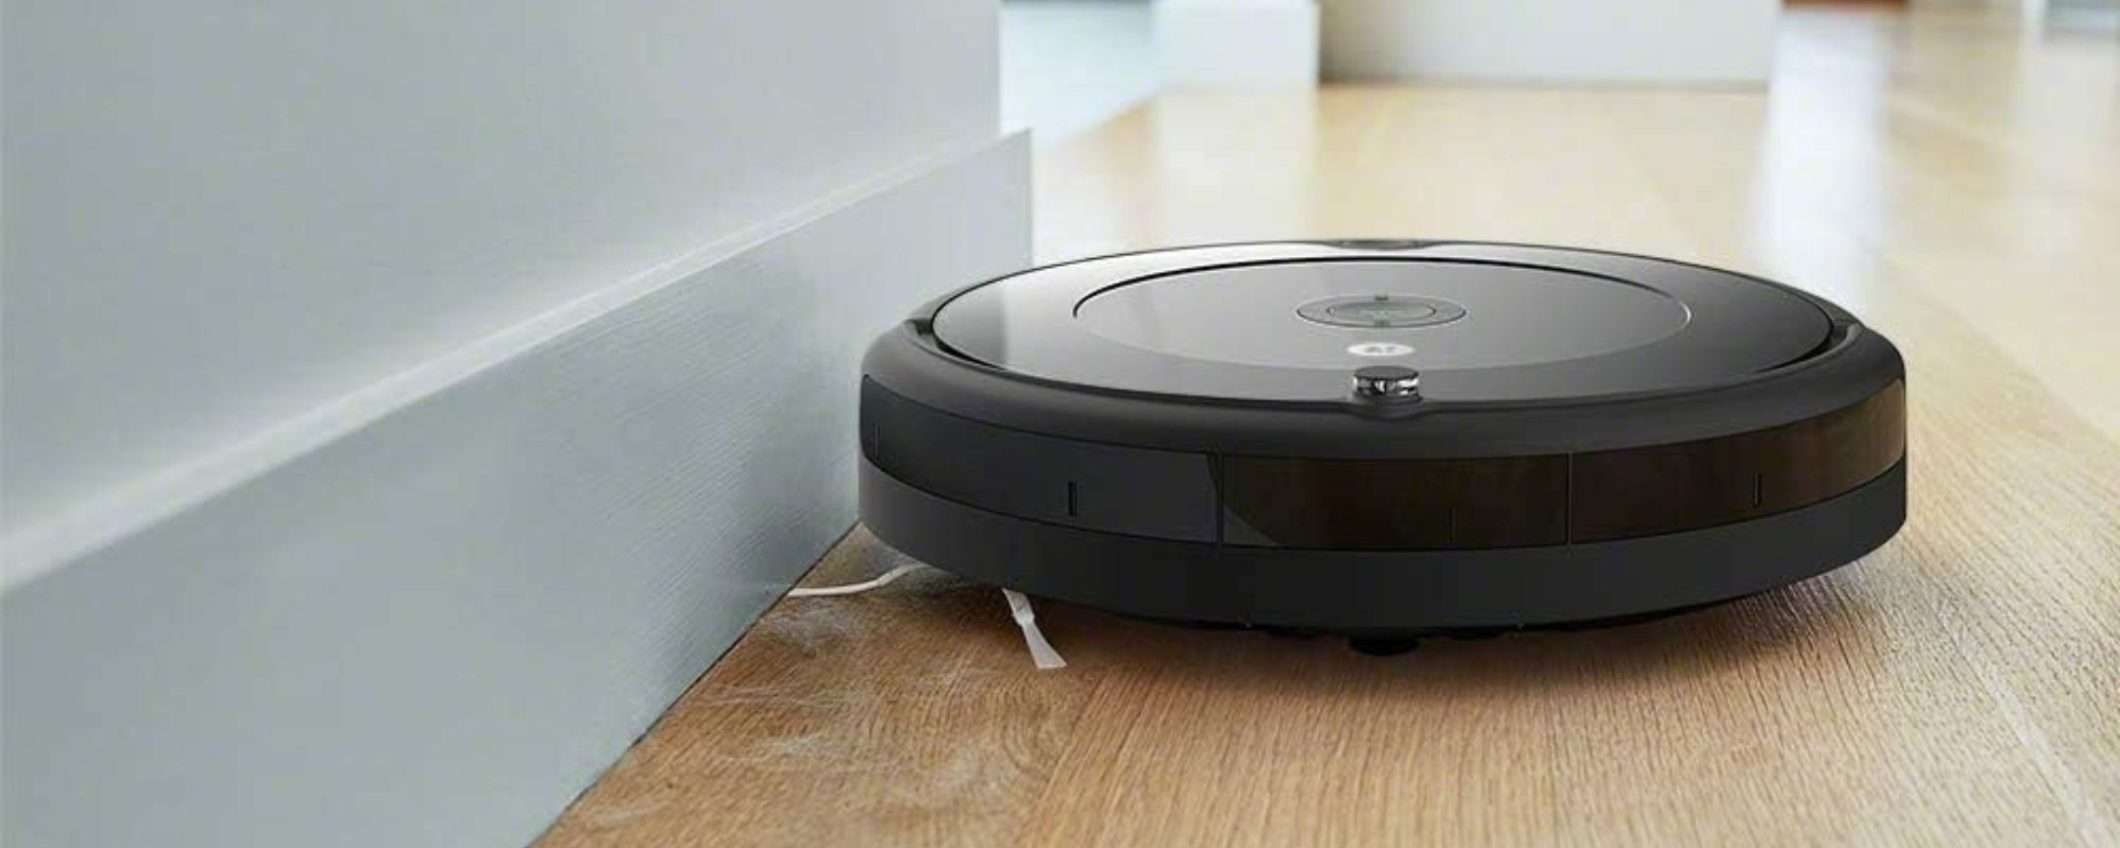 NIENTE PIÙ POLVERE con il robot Roomba 692, oggi giù del 33% su Amazon